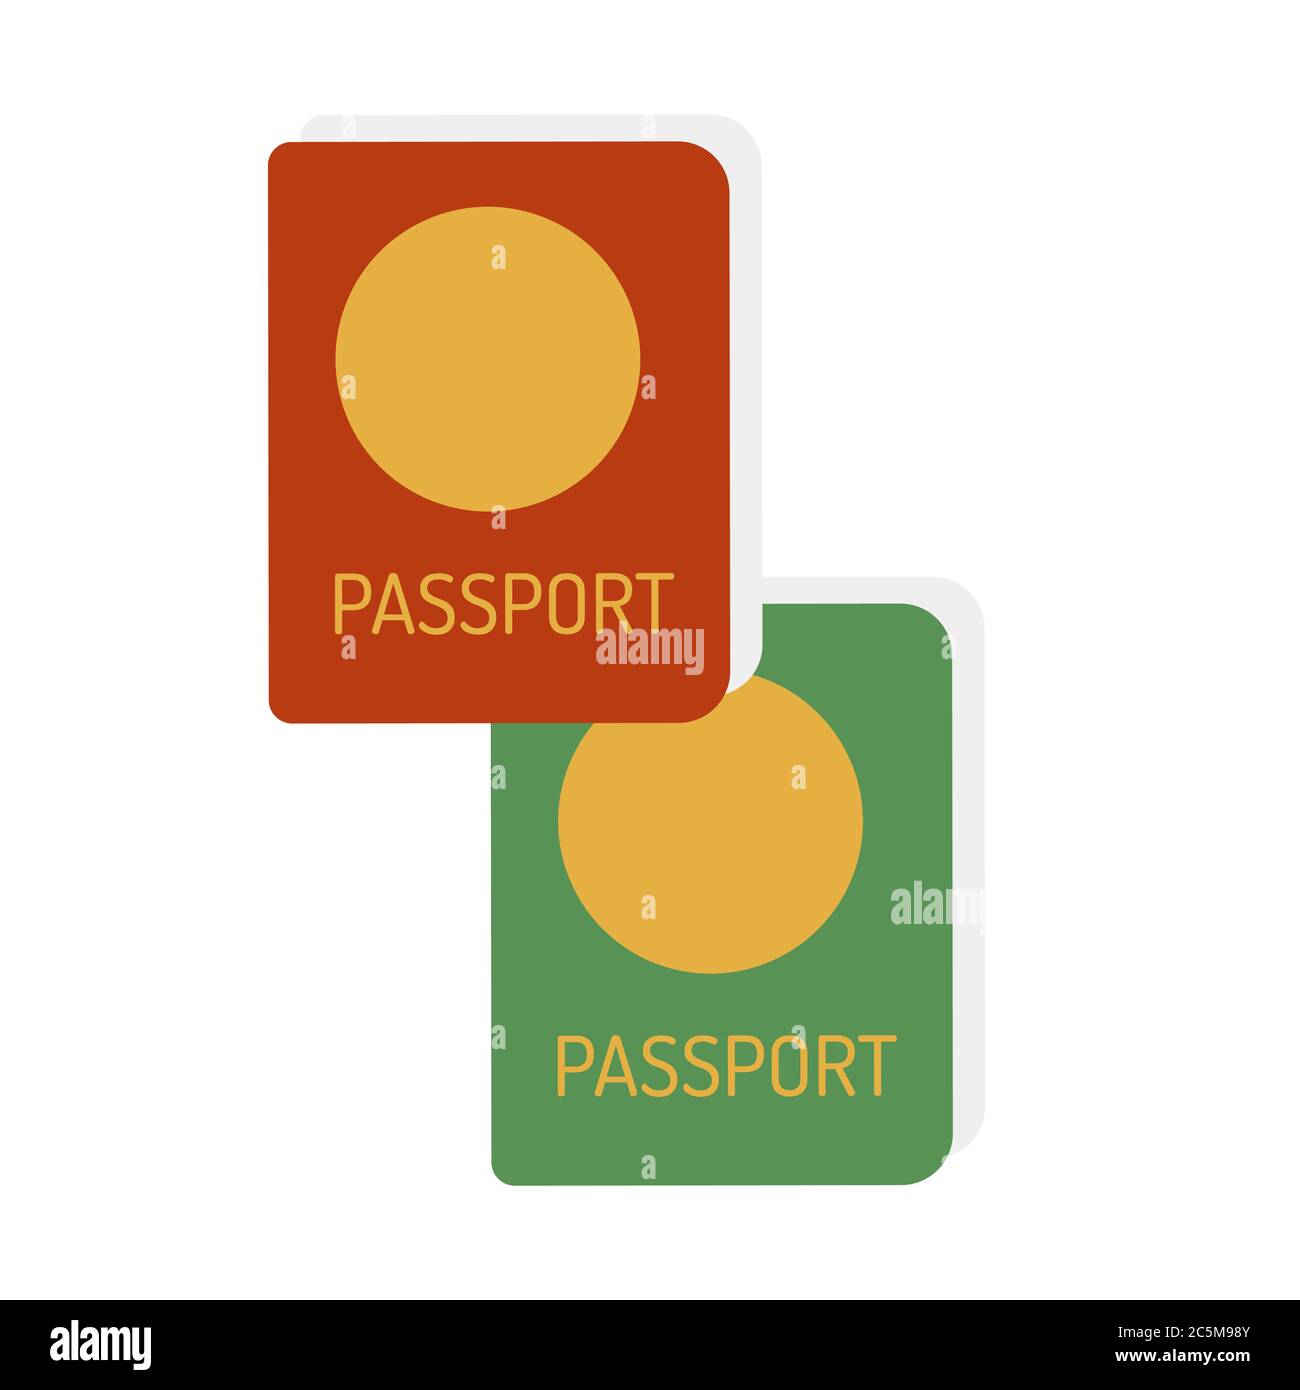 Icona Passport Set isolata su sfondo bianco. Stile piatto alla moda per grafica, sito web. Illustrazione vettoriale EPS 10 Illustrazione Vettoriale